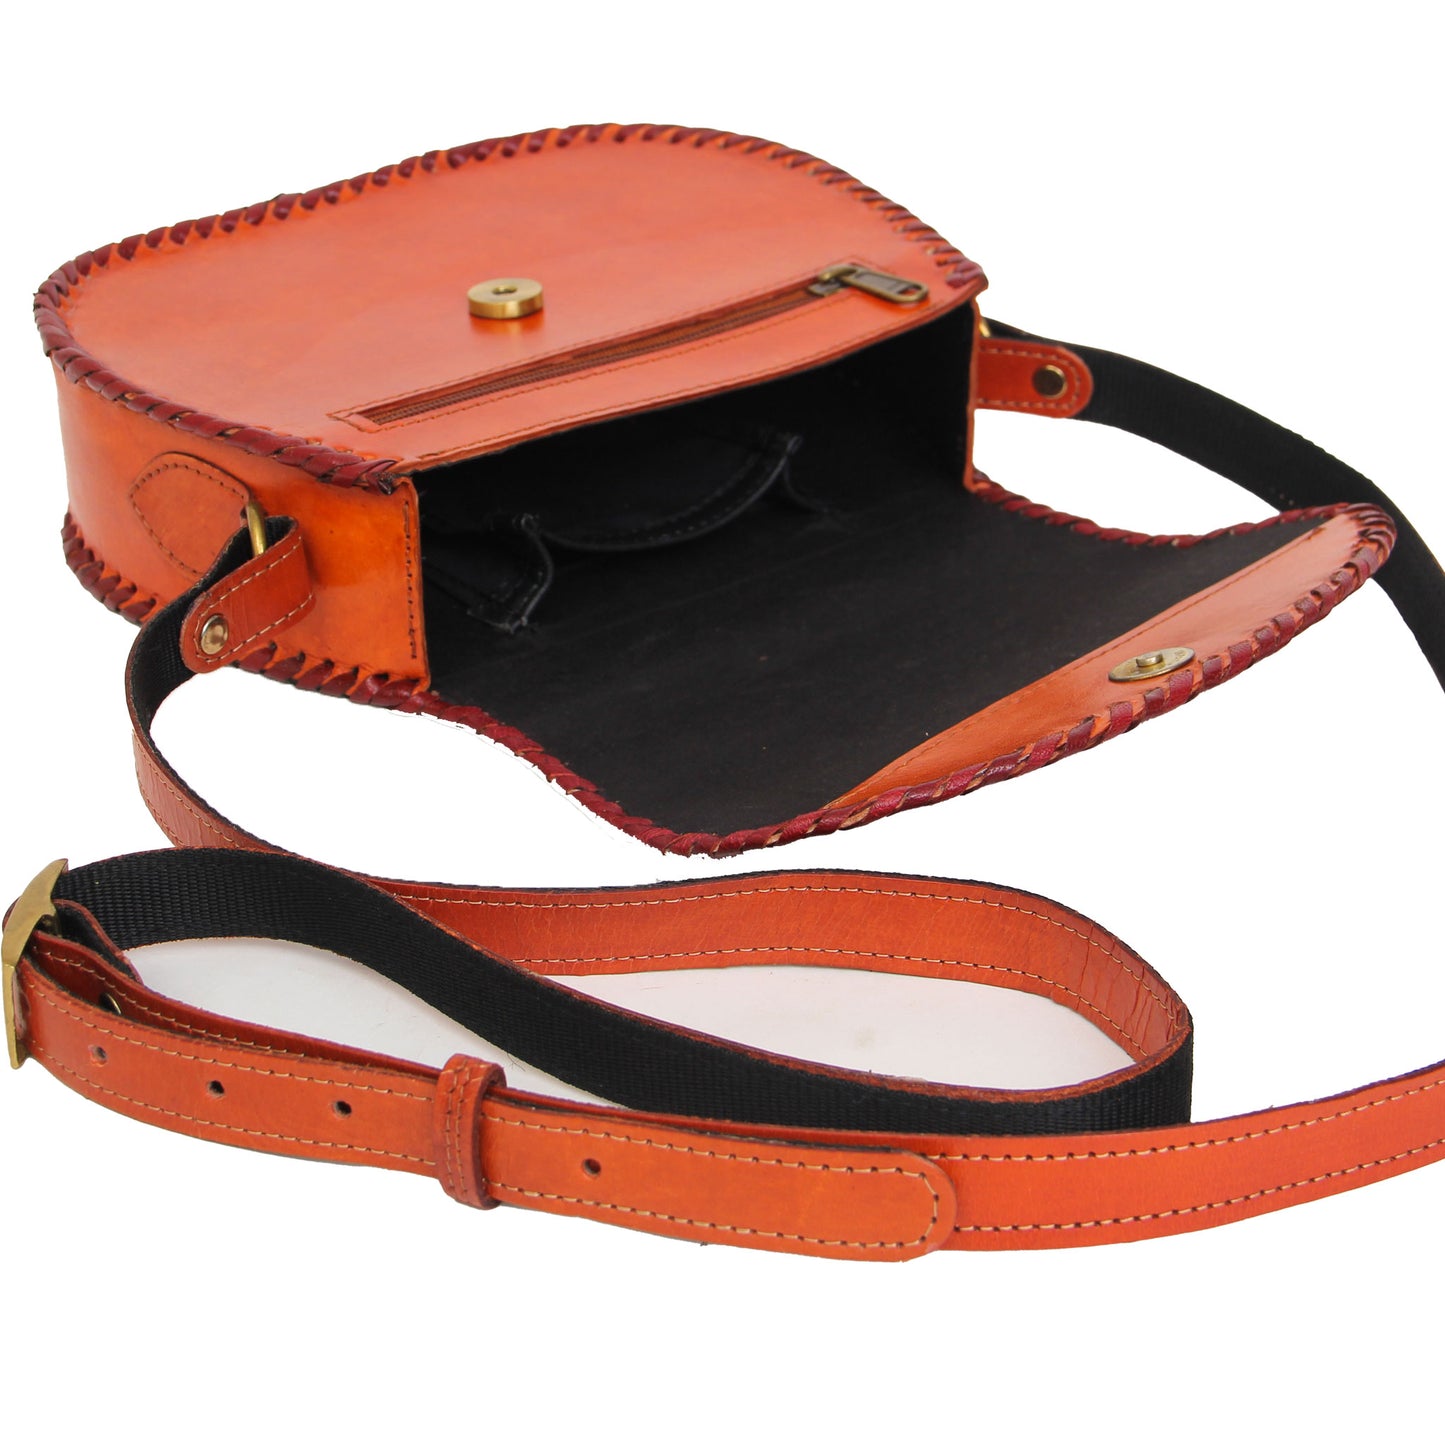 Orange Crossbody Handcarved Leather Sling Bag